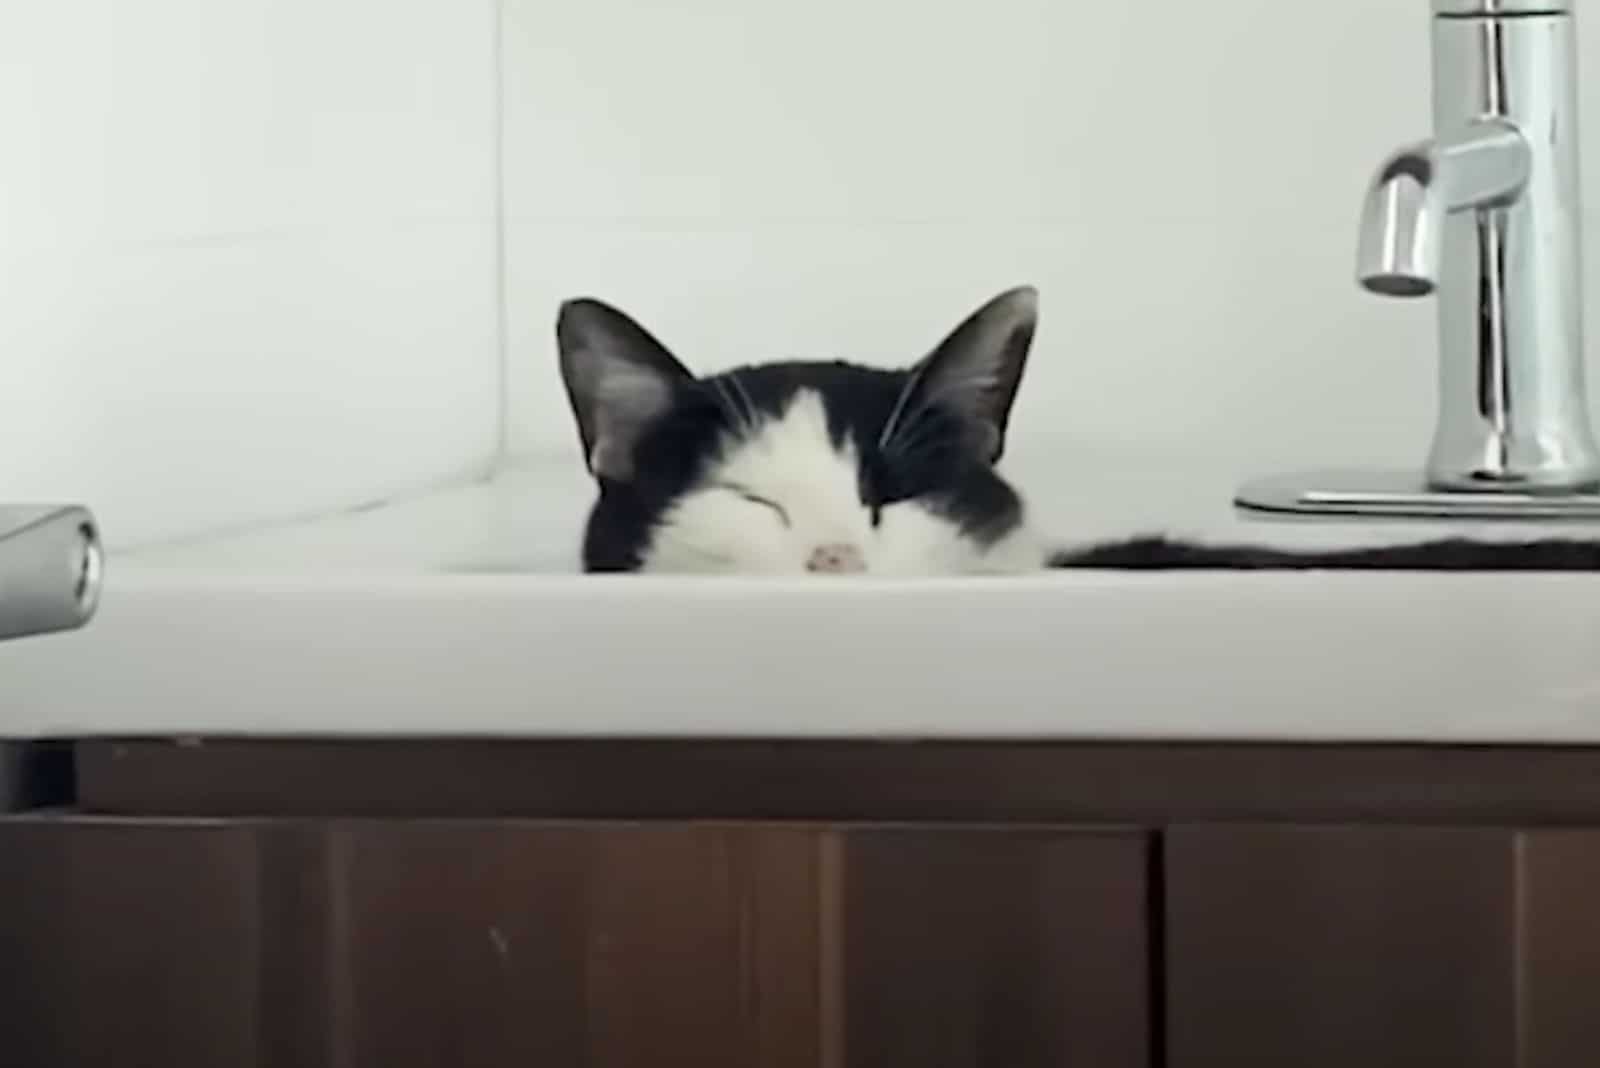 cat peeking from the sink